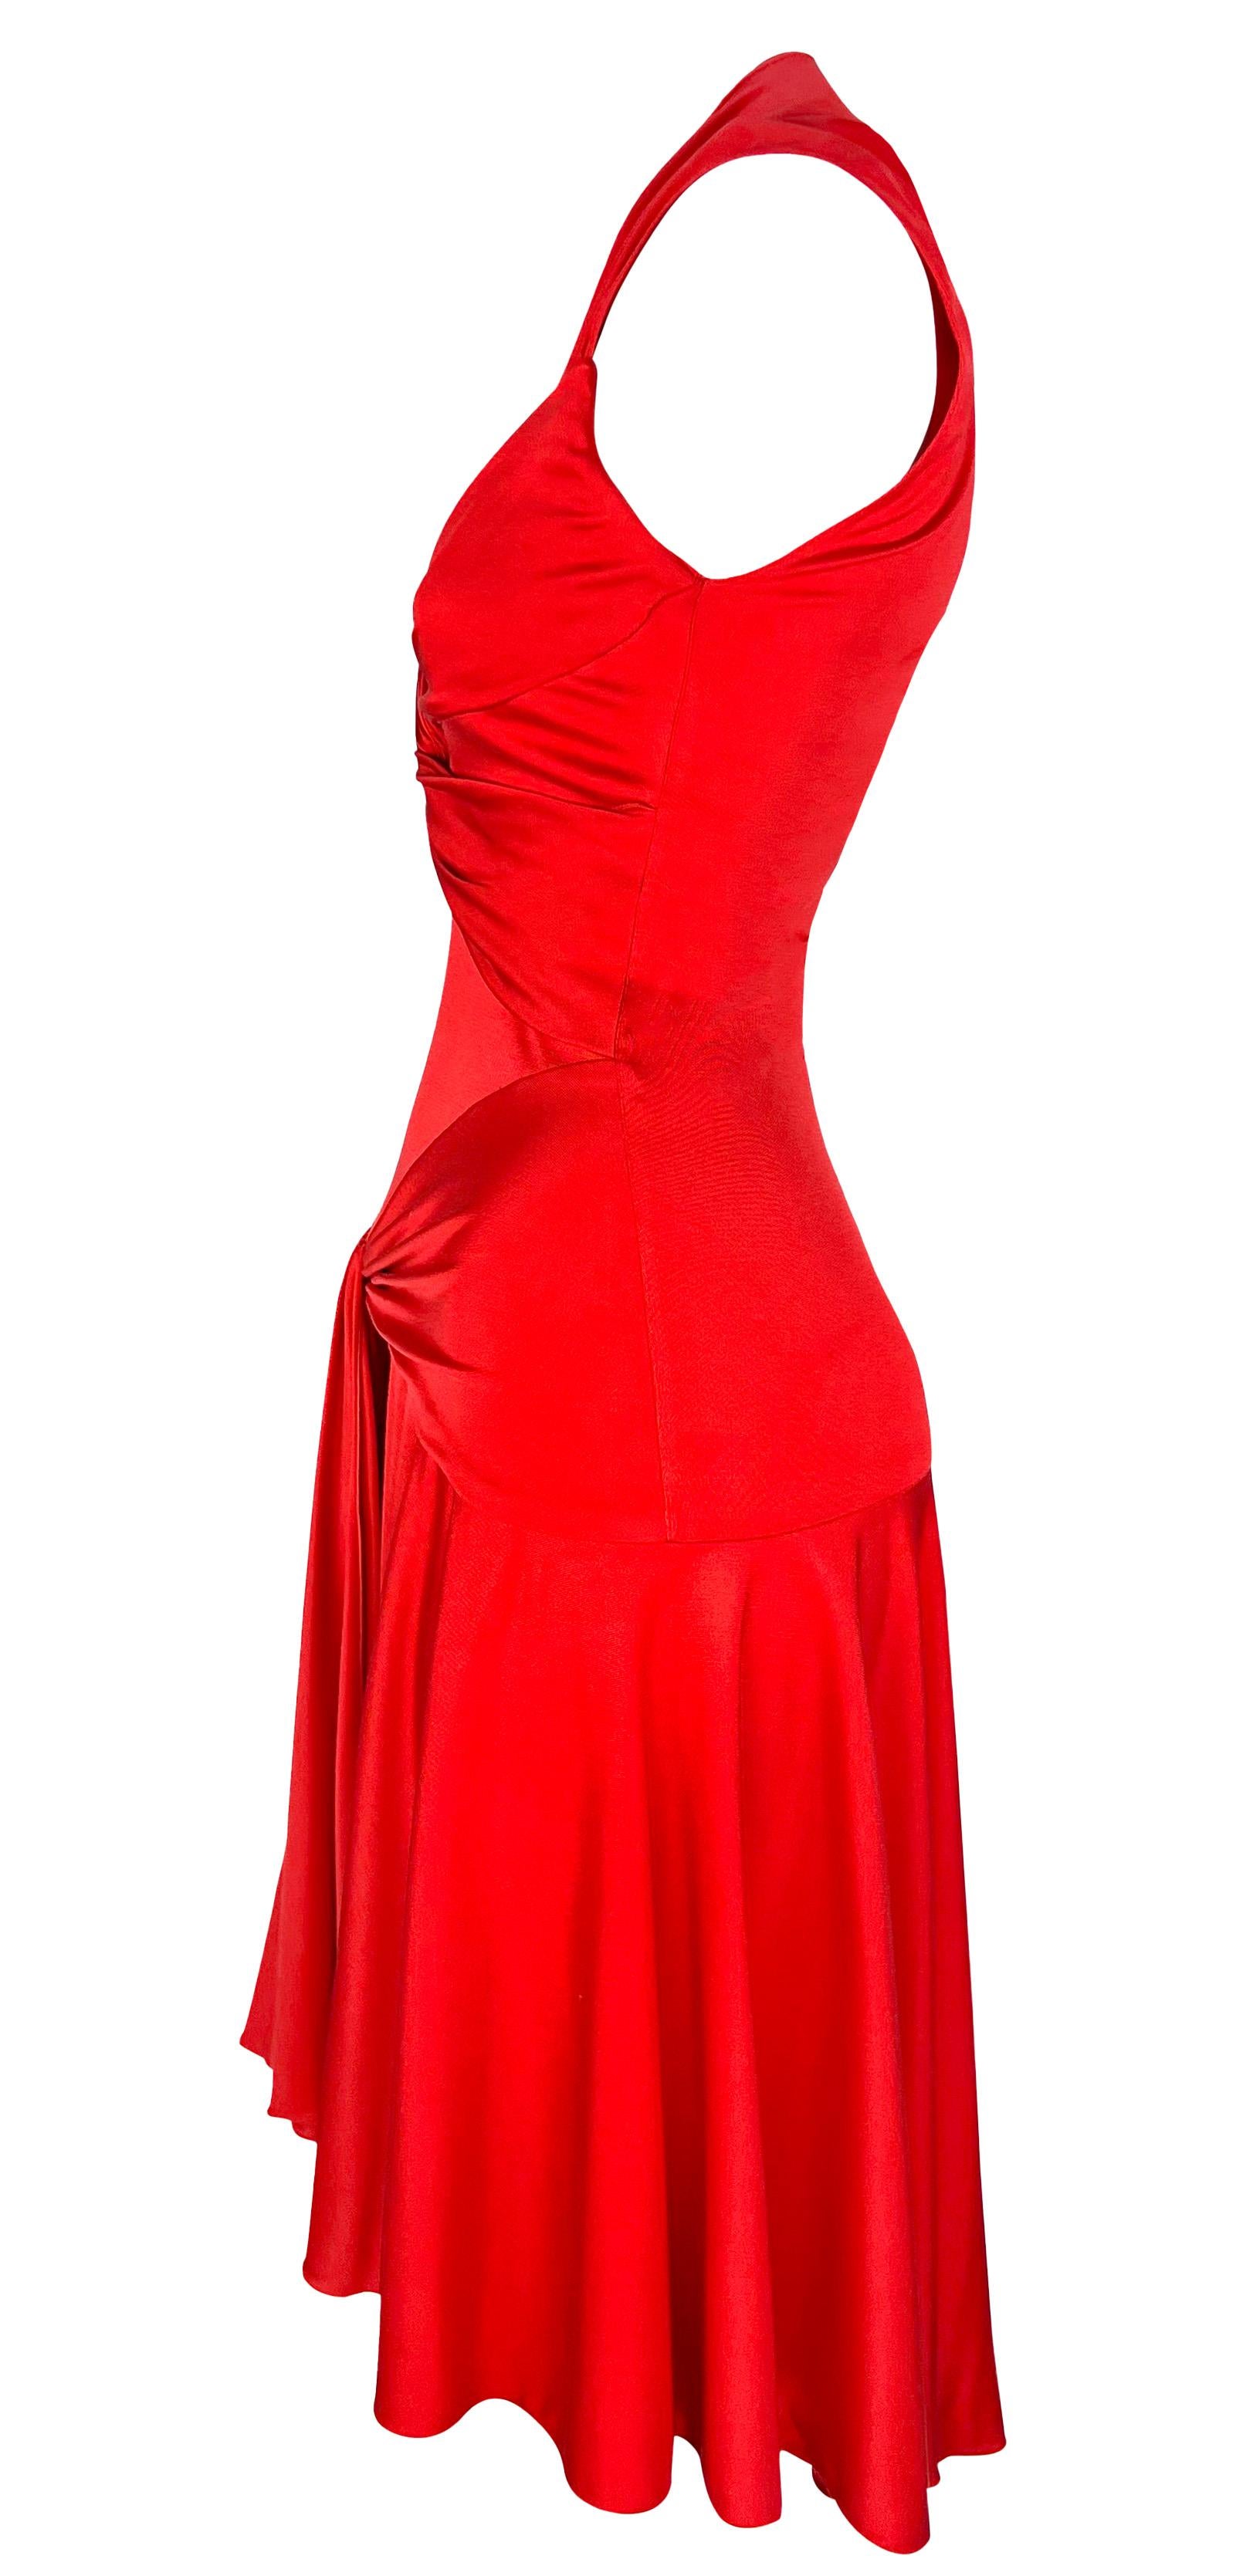 S/S 2004 Valentino Garavani Runway Red Silk Bodycon Flare Mini Dress For Sale 3